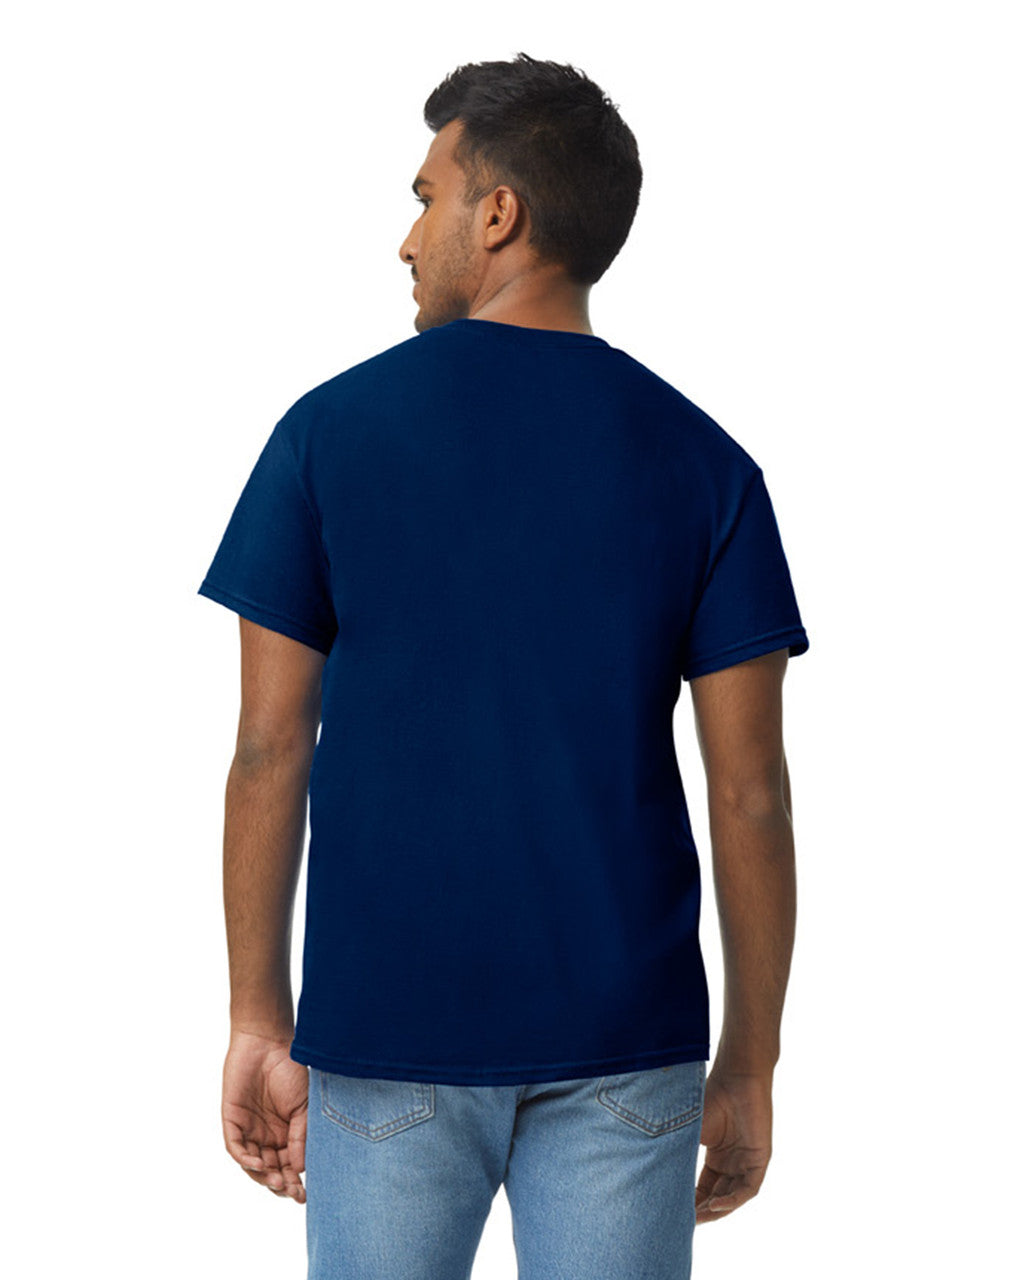 Camiseta Adulto Azul Marino Gildan Ref. 5000